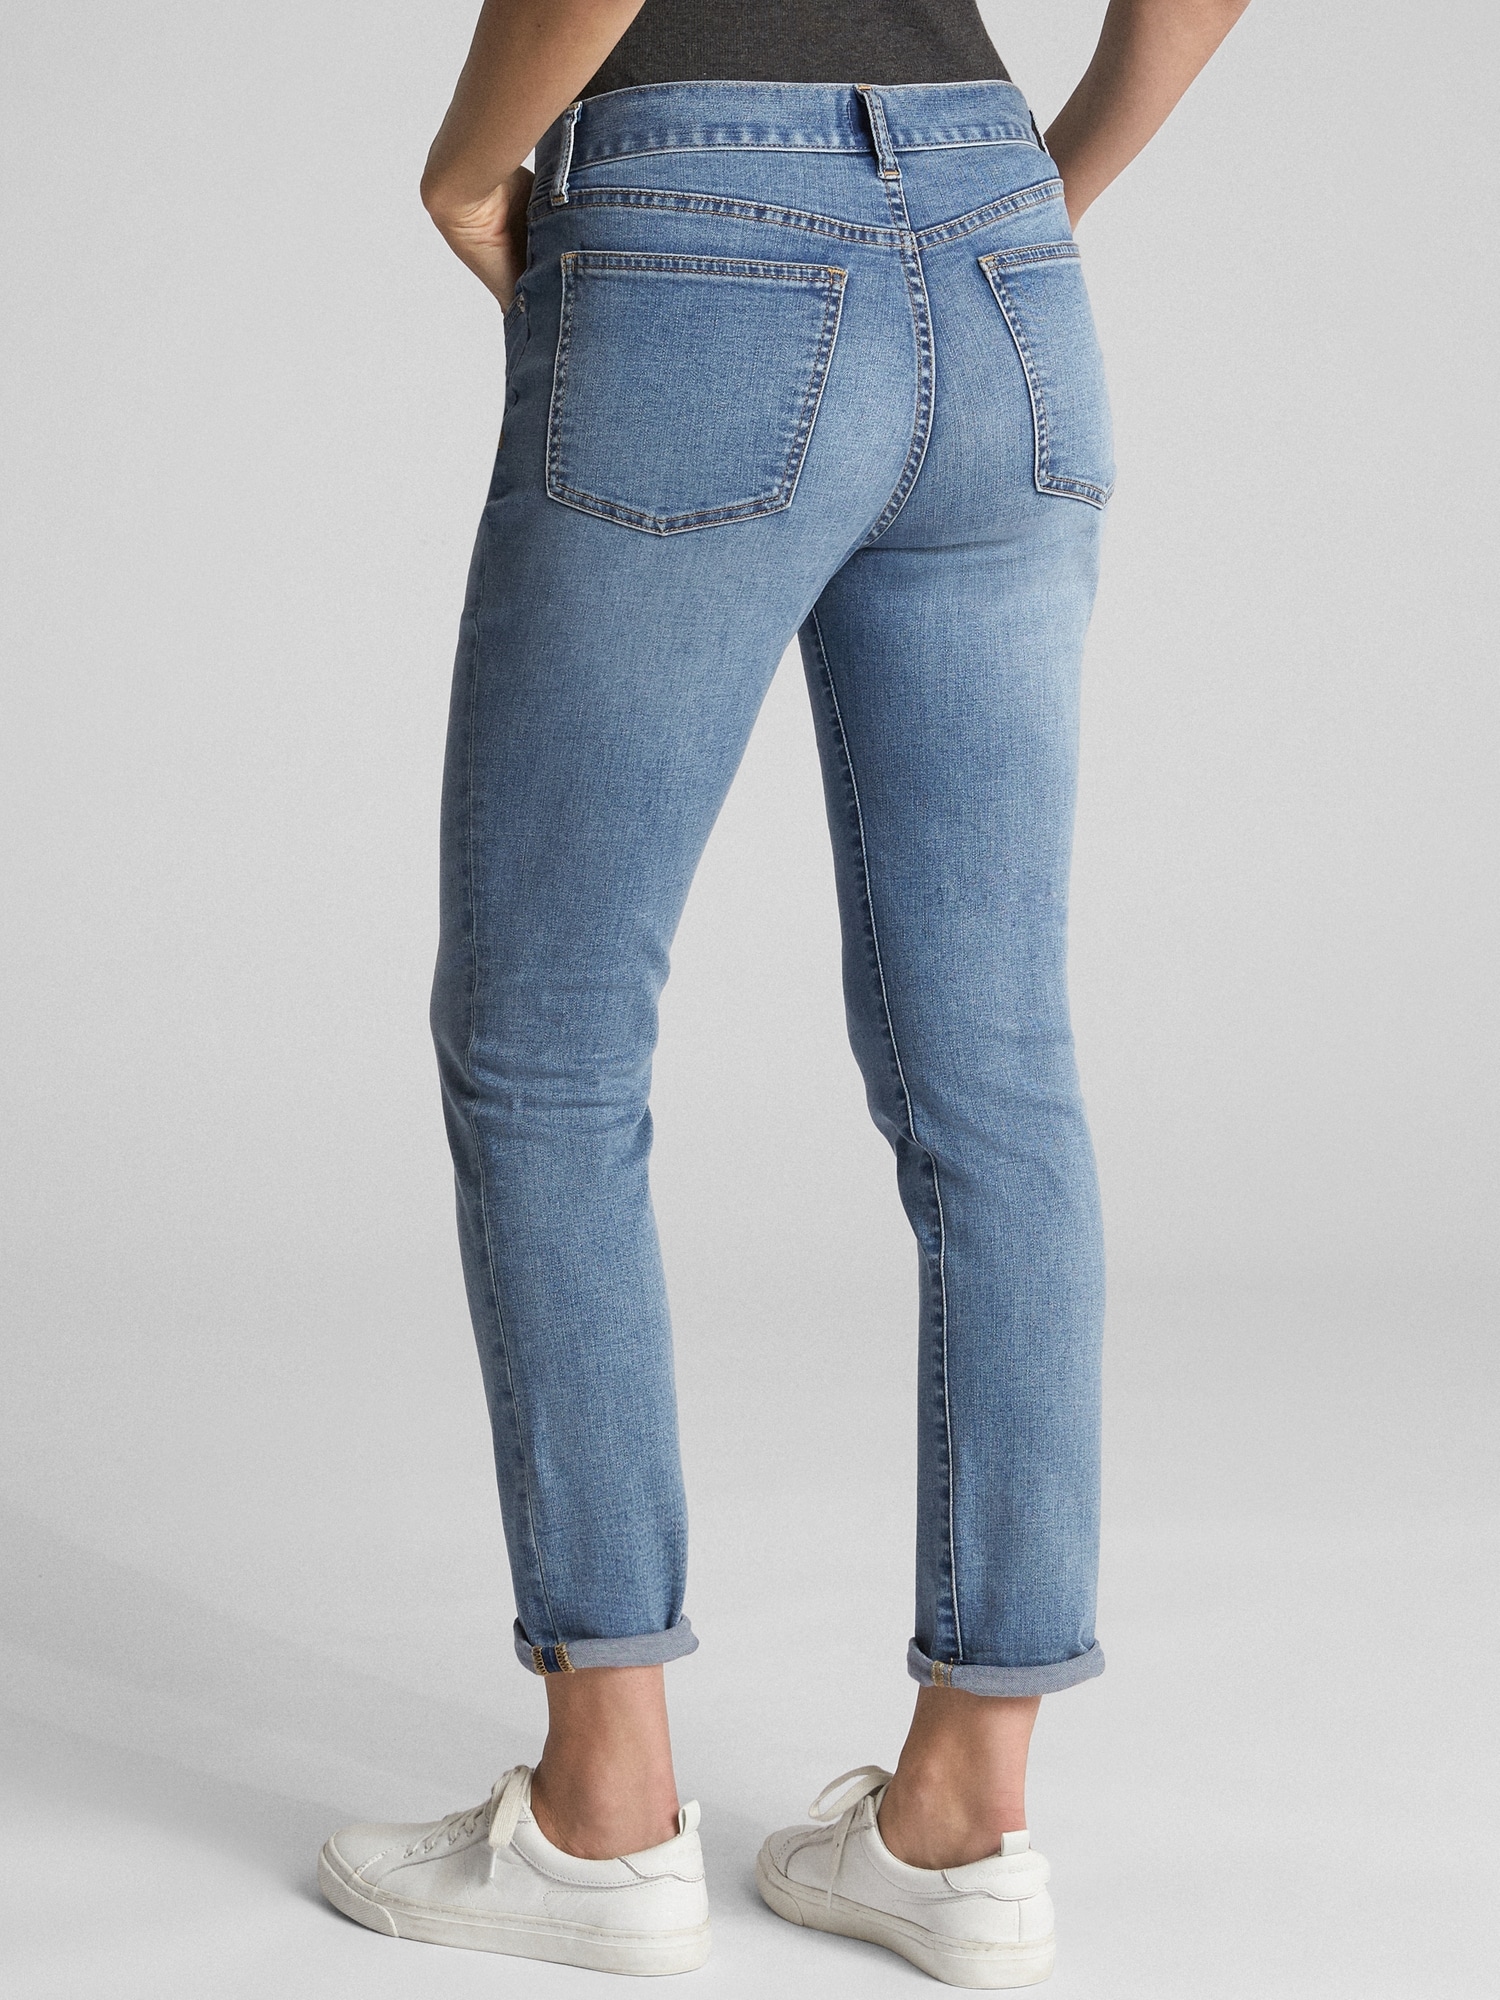 gap softwear jeans